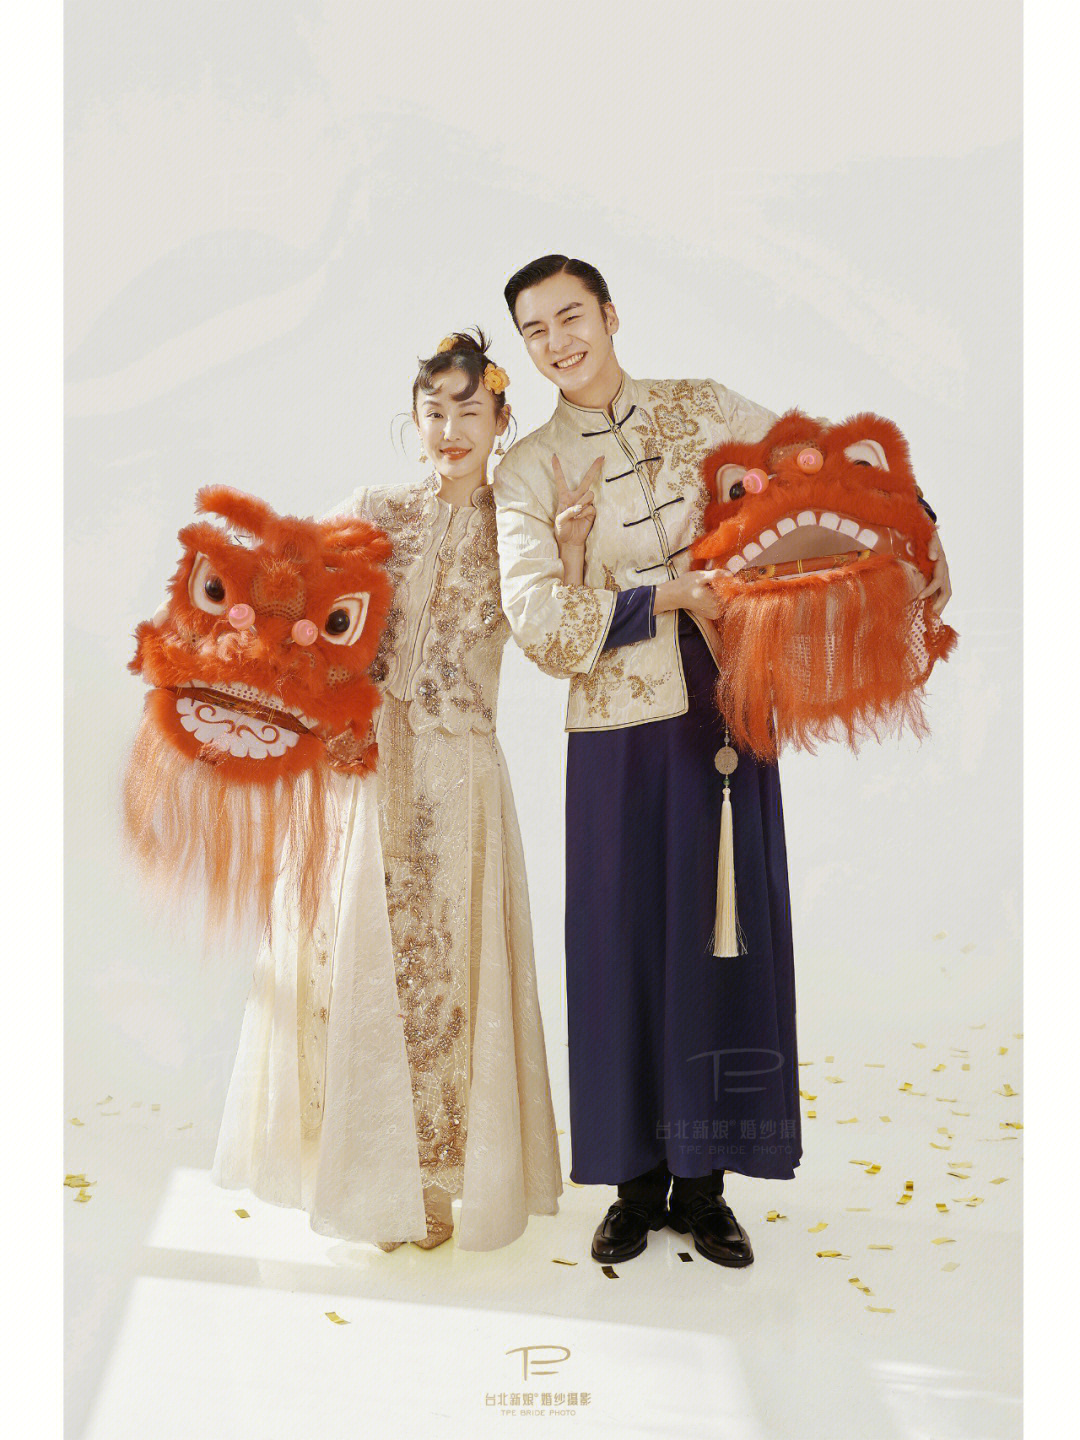 中式创意婚纱照丨繁琐国风喜狮也能出彩